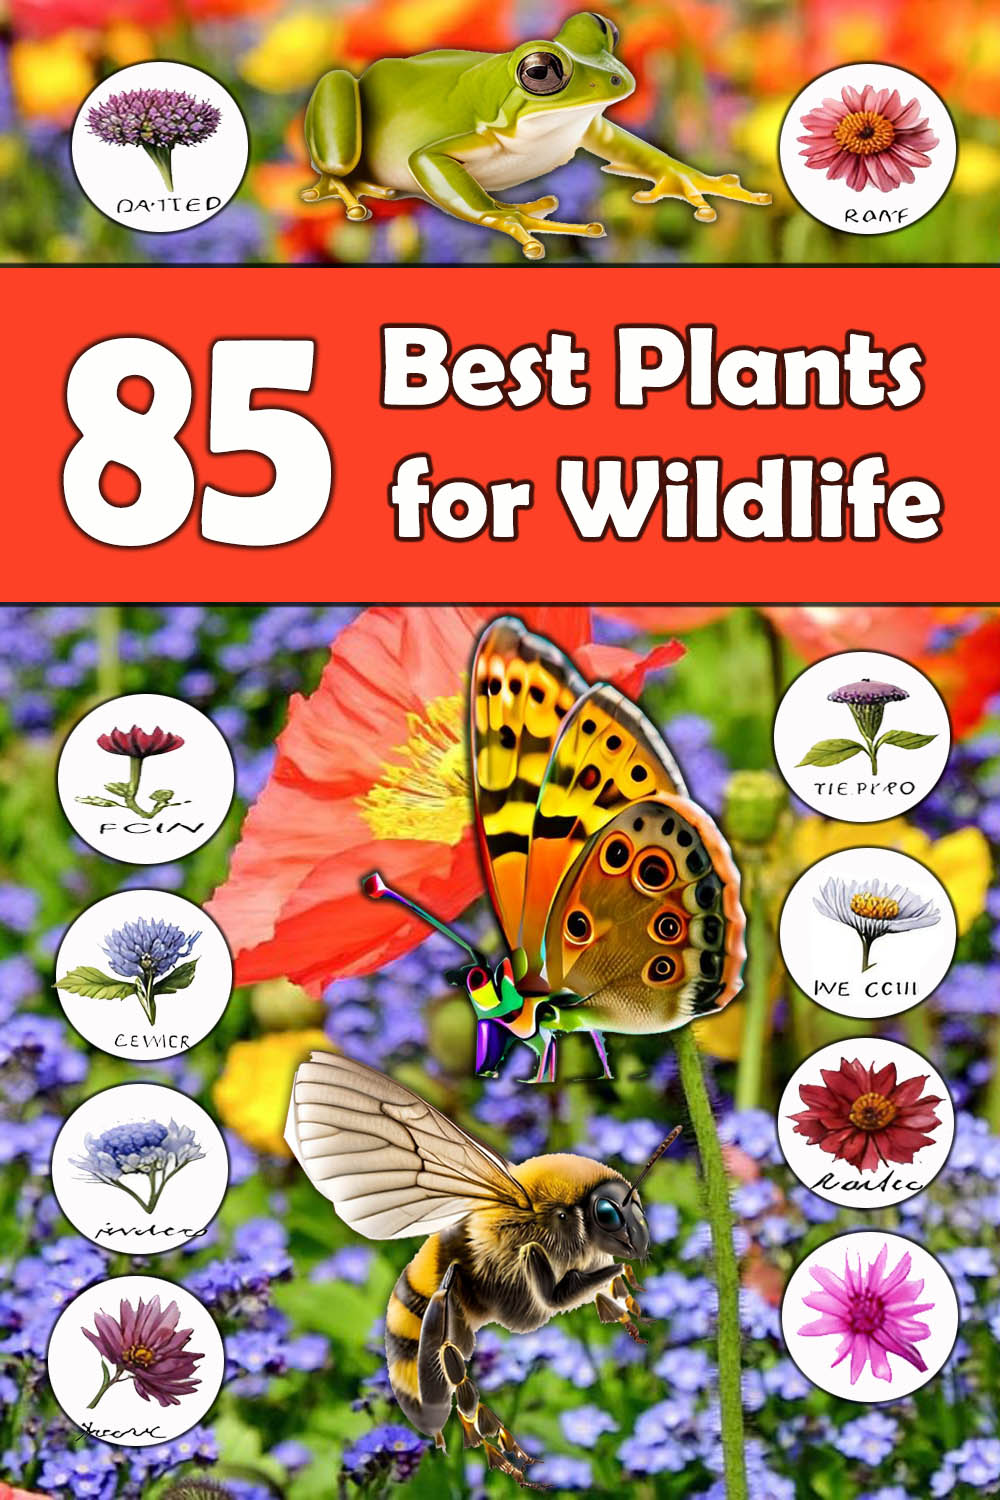 Plants for wildlife